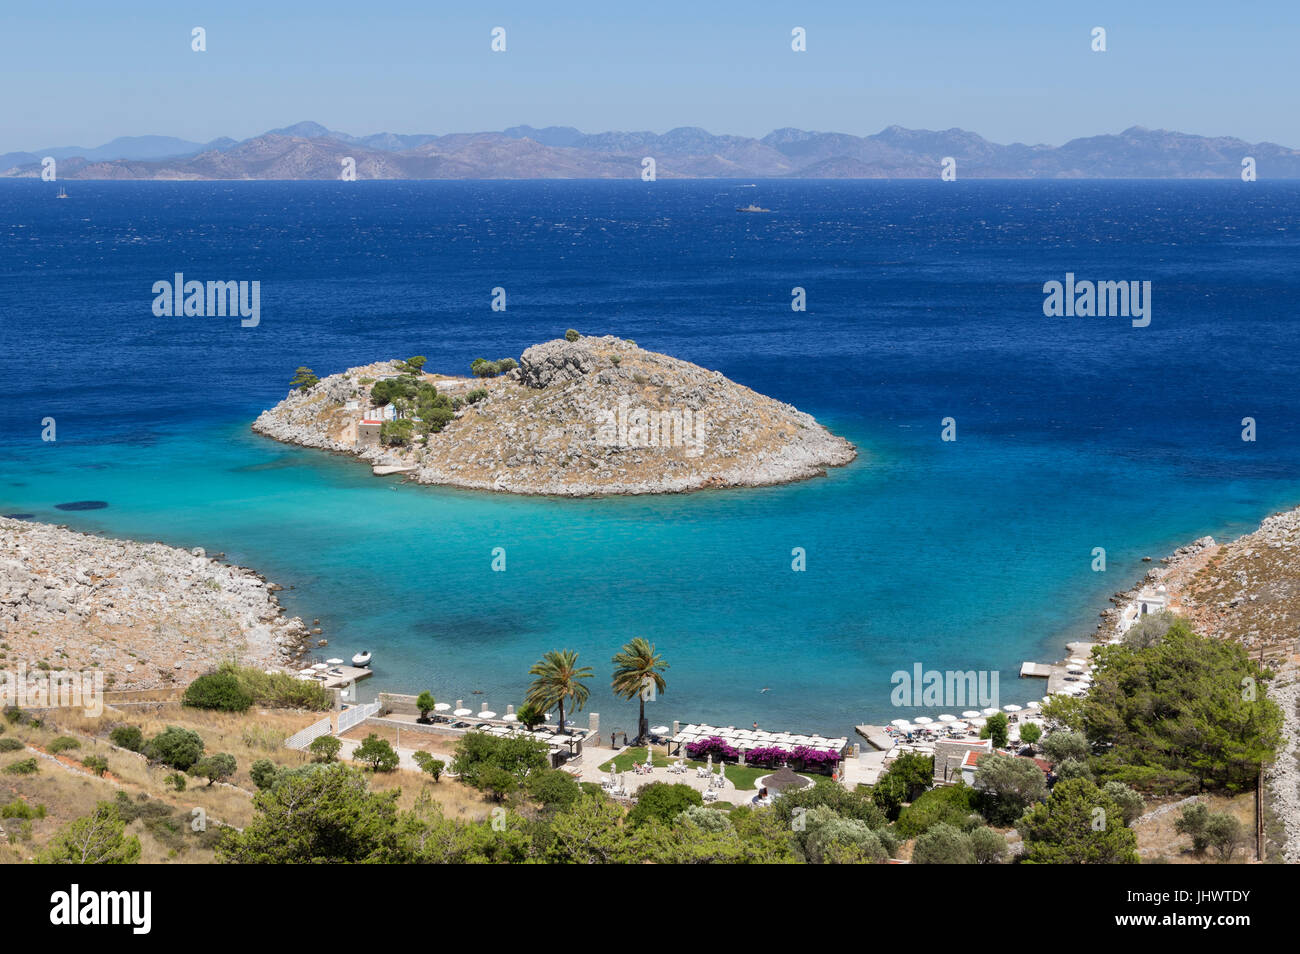 Symi Island, South Aegean, Greece - Aghia Marina, a beautiful off-shore island a little to the north-east of Pedi Stock Photo